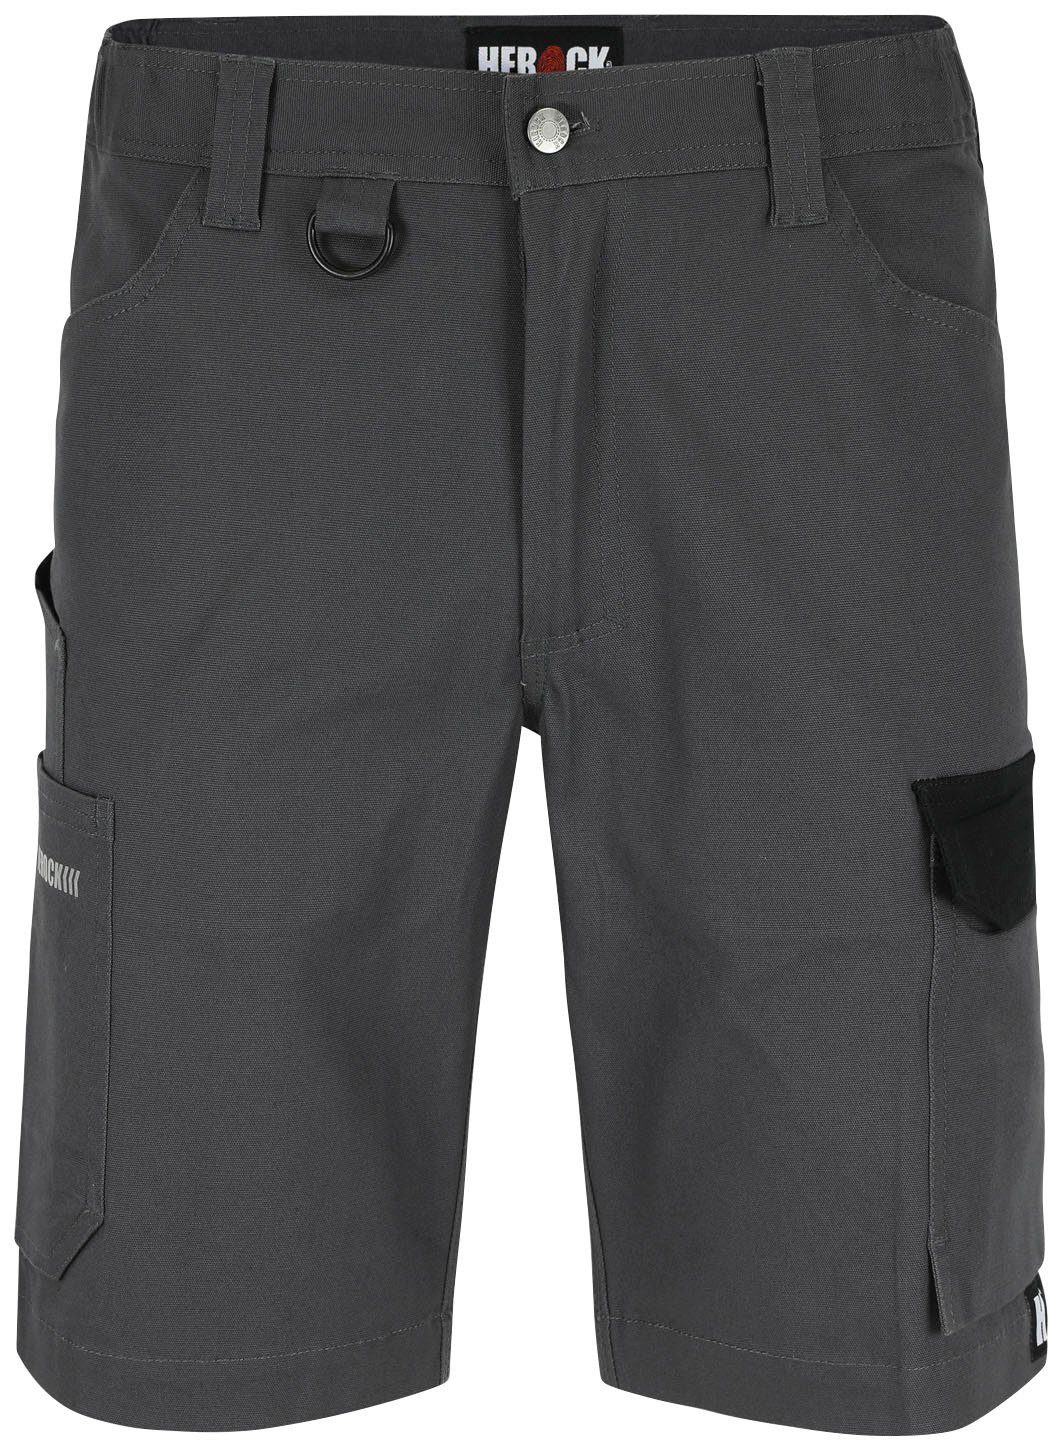 Herock Shorts Bargo Multi-Pocket, mit 2-Wege-Stretch-Einsatz, verschiedene Farben kohle/schwarz